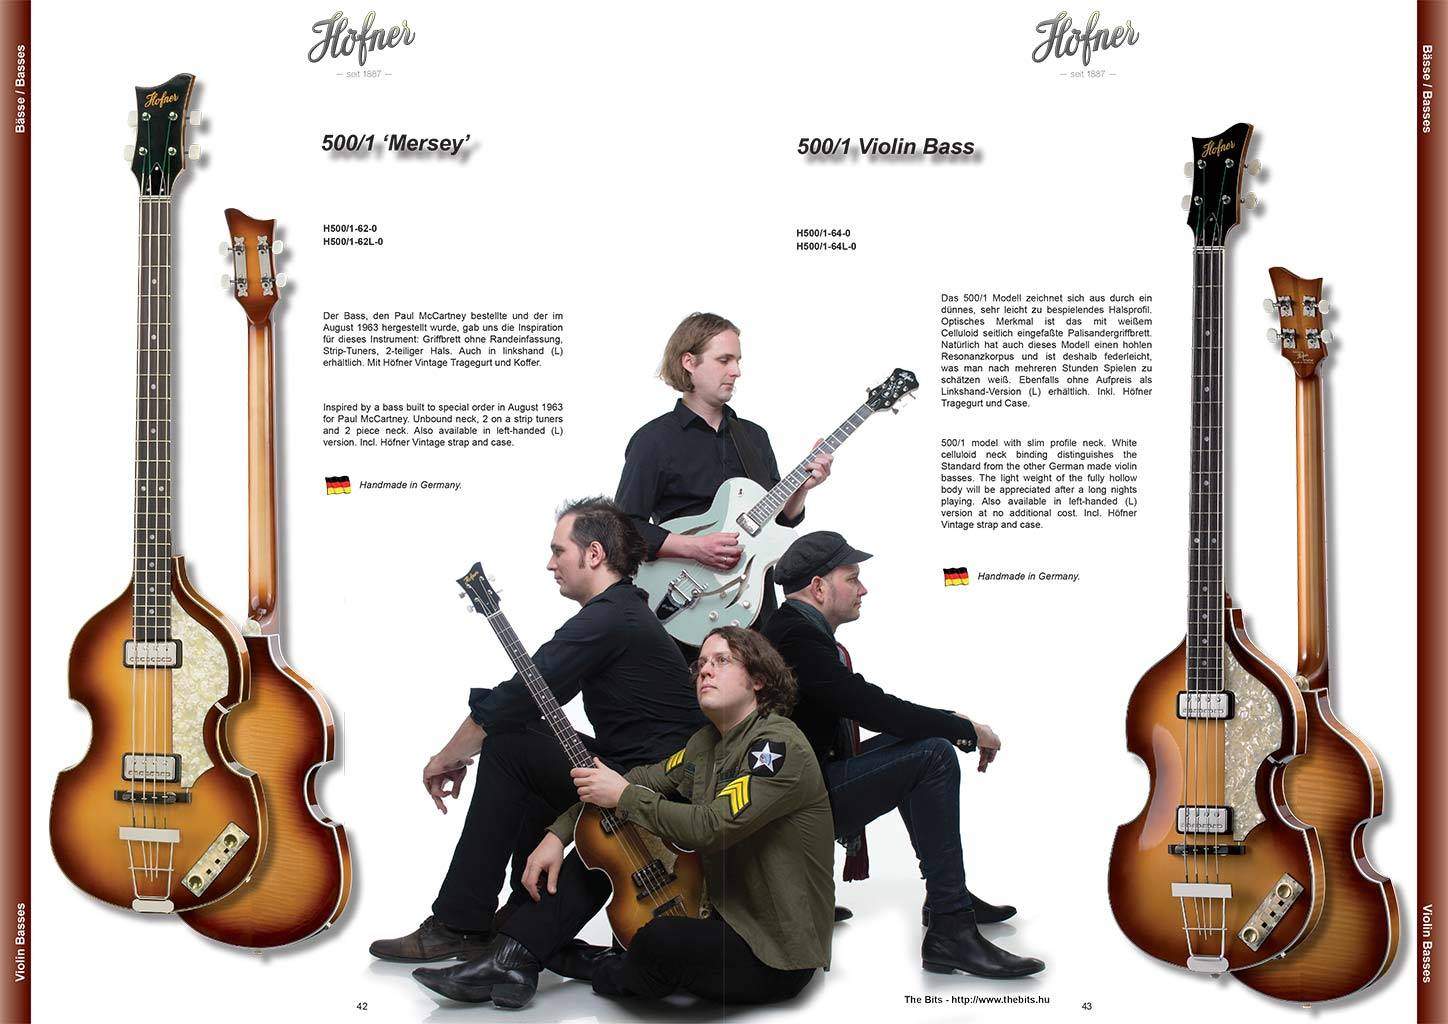 A The Bits Beatles emlékzenekar a Höfner hivatalos arca